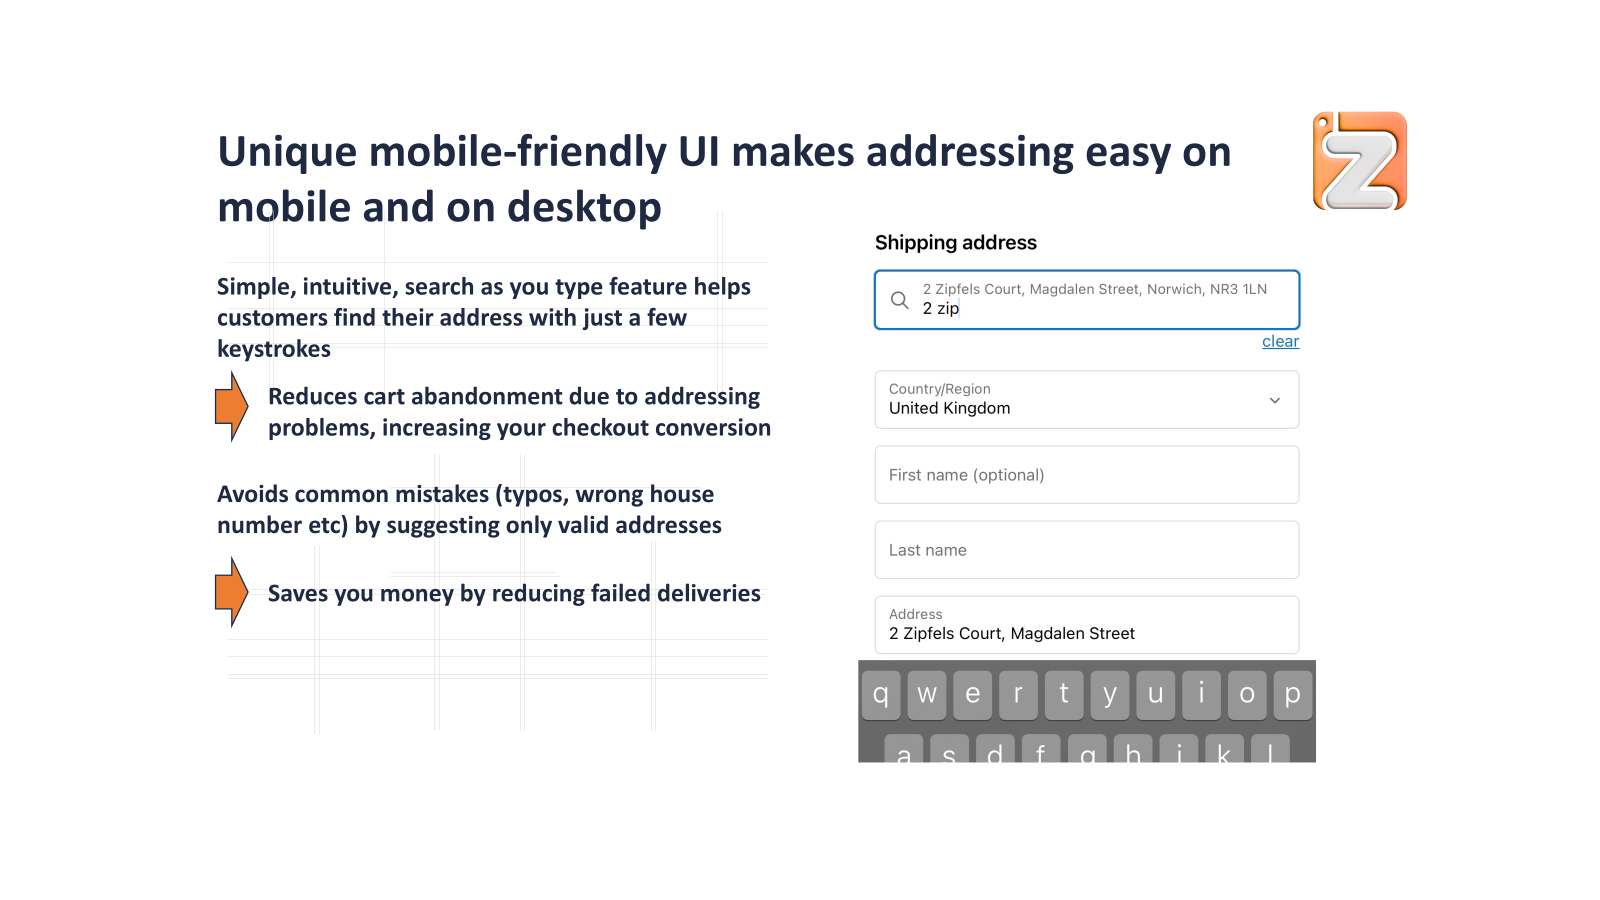 Unieke, eenvoudige UI maakt adressering gemakkelijk op mobiel en op desktop